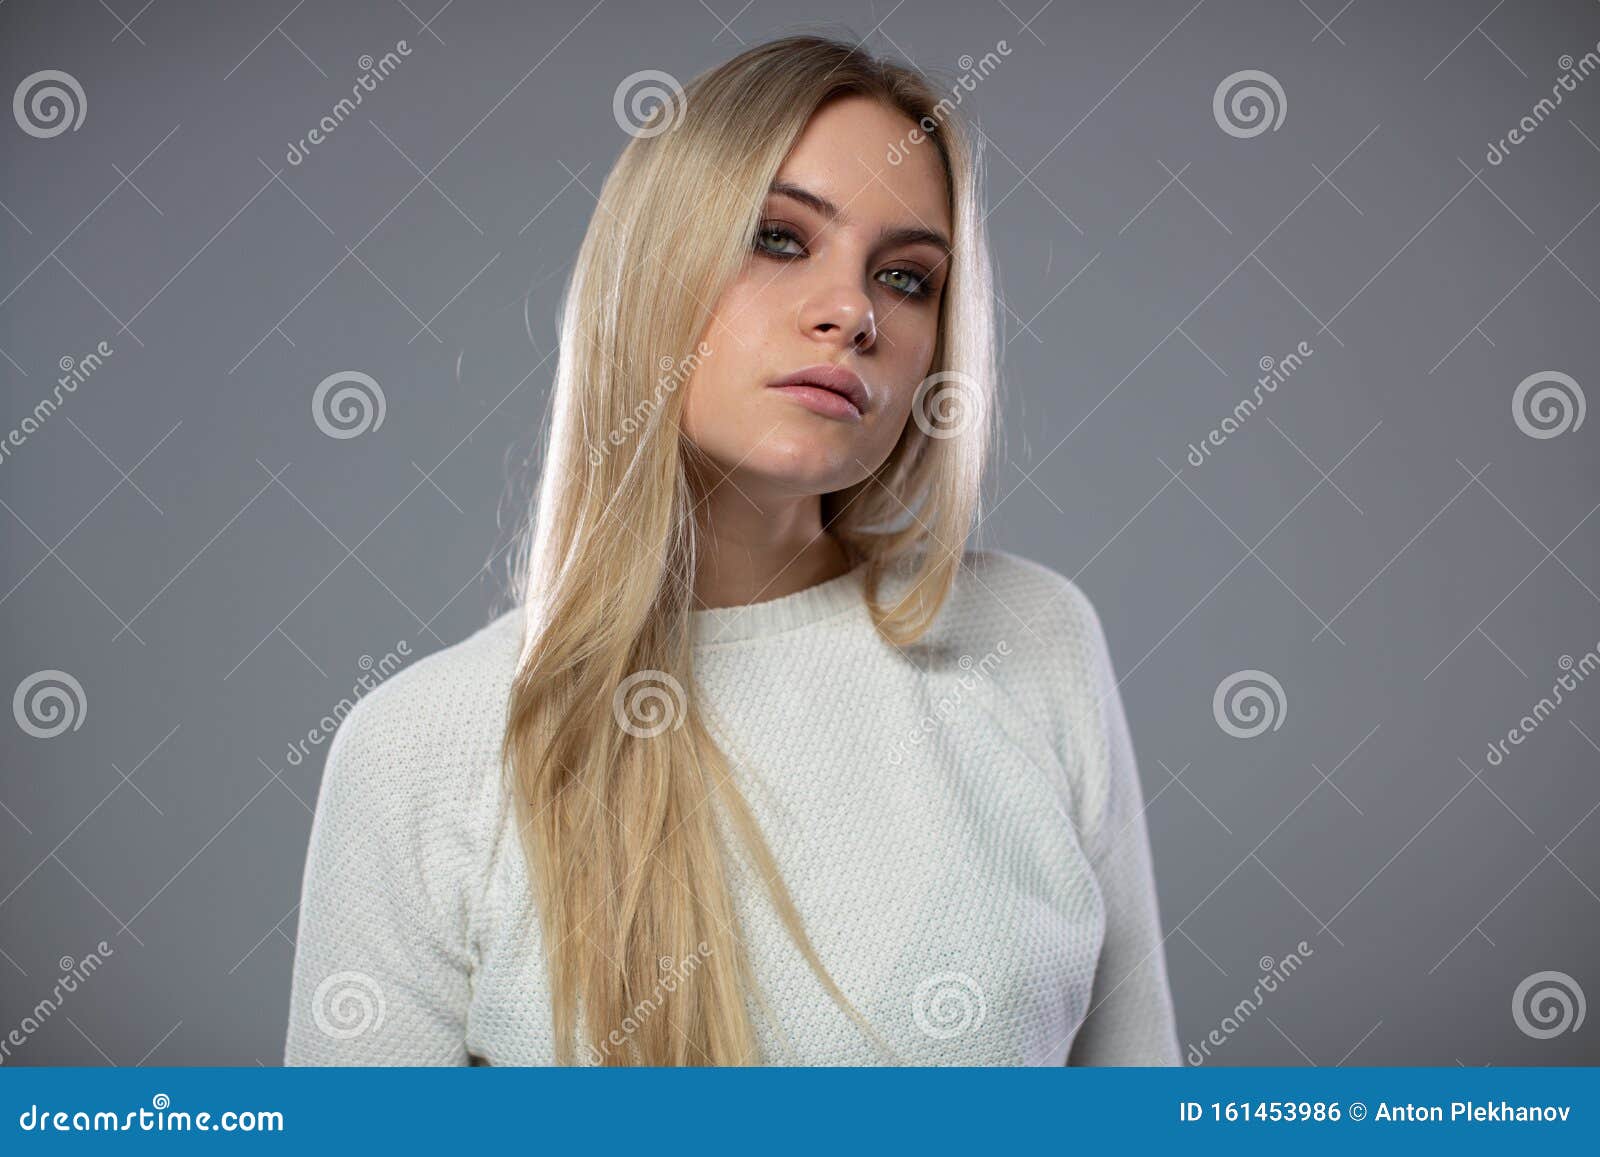 Μια εντυπωσιακή γαλάζια γυναίκα με λευκά ρούχα κοιτάζει με αδημονία την  κάμερα Στοκ Εικόνες - εικόνα από lifestyle: 161453986